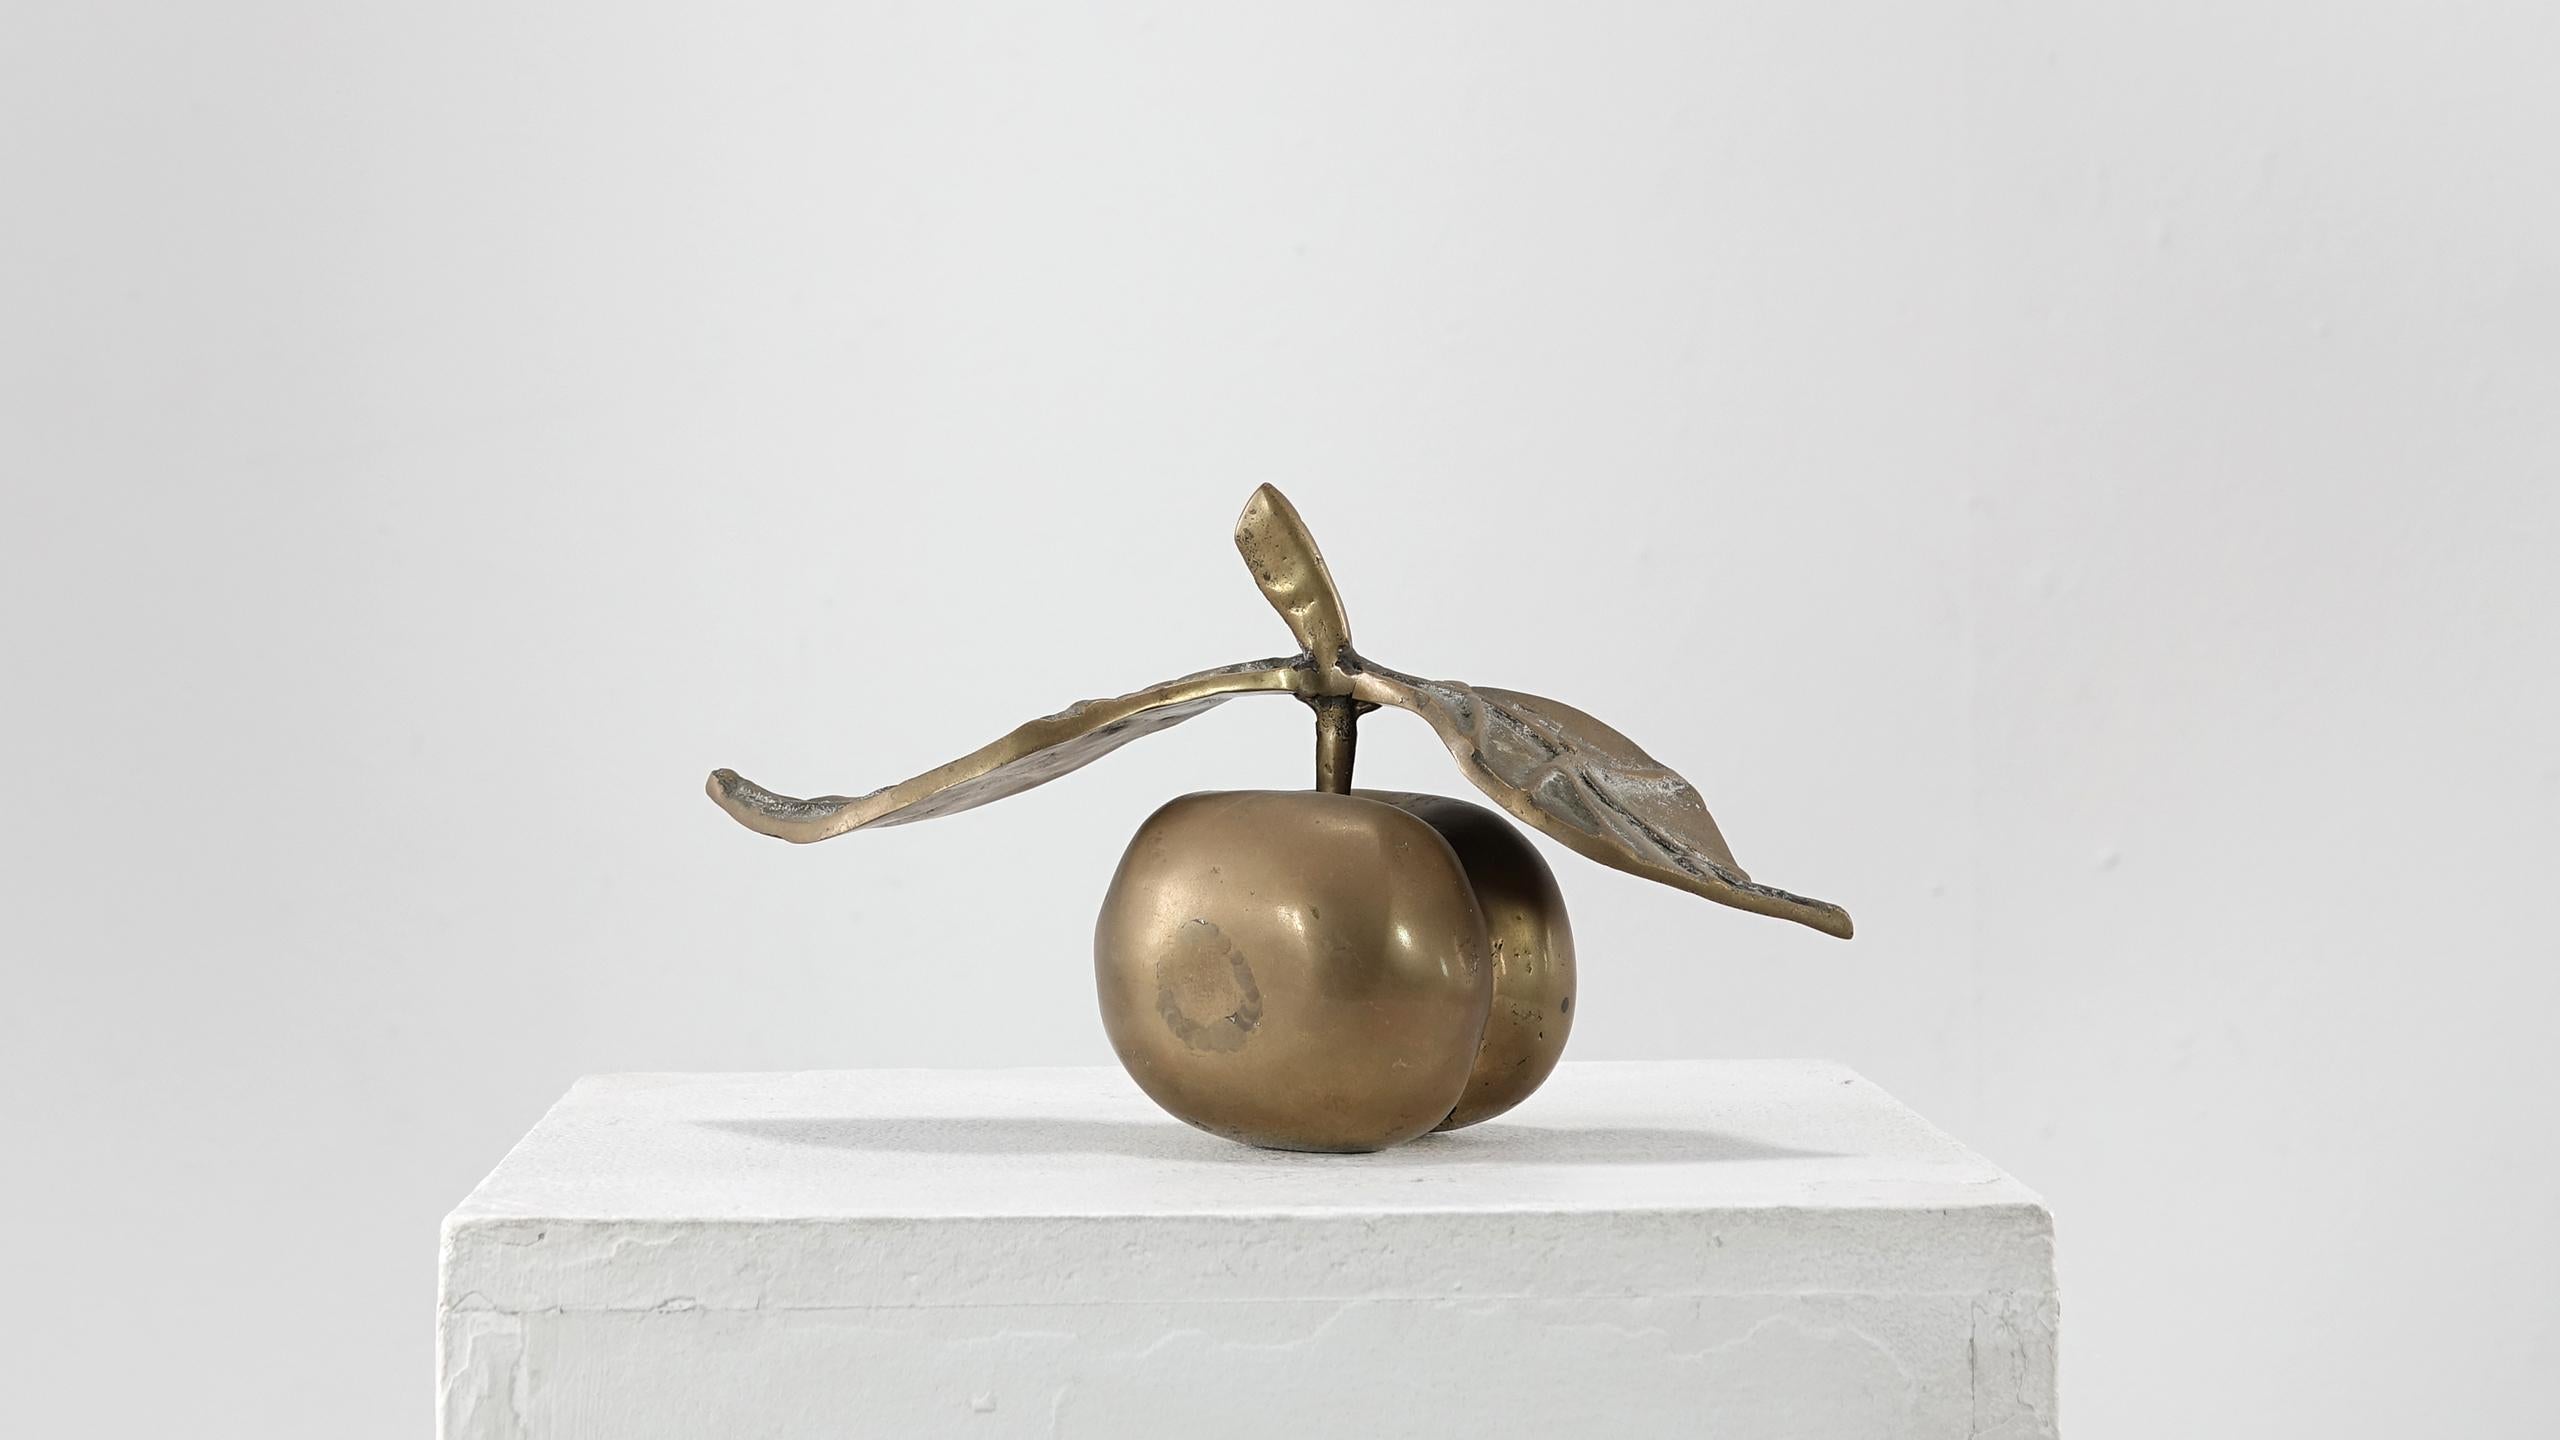 David Marshall Desenos Brass Apple Sculpture In Good Condition In Munster, NRW